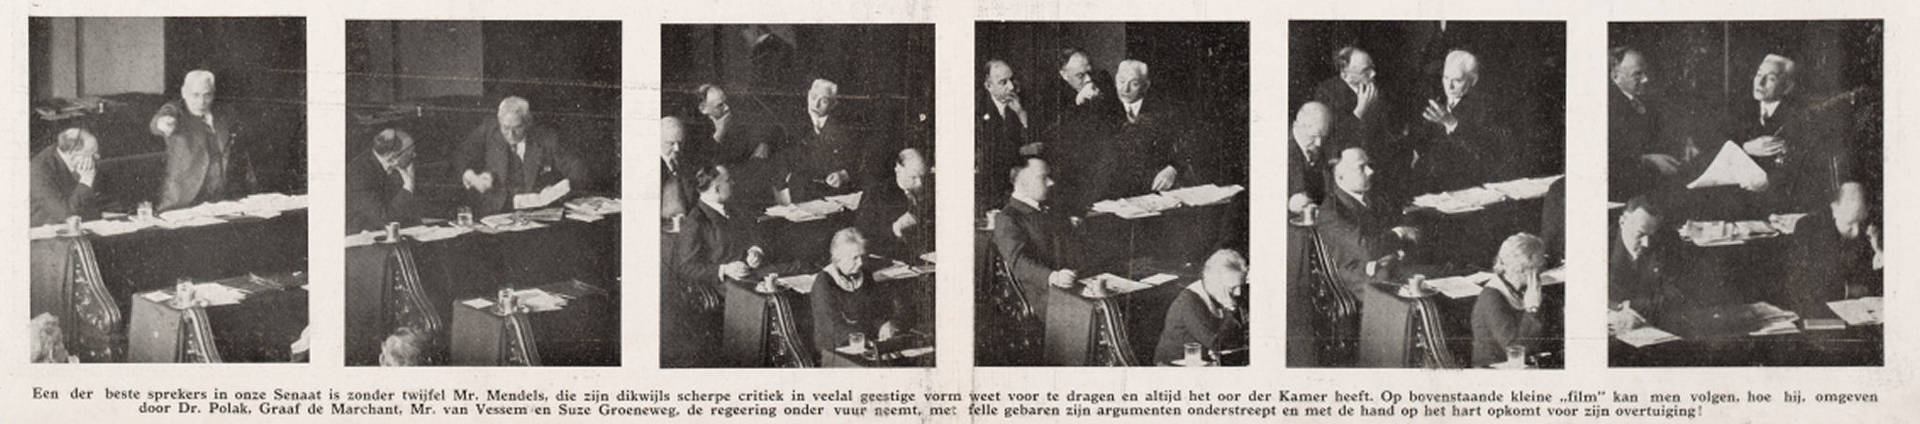 Het parlementaire duel in de Senaat. Foto Erich Salomon, in: Het Leven, 29 feb. 1936.